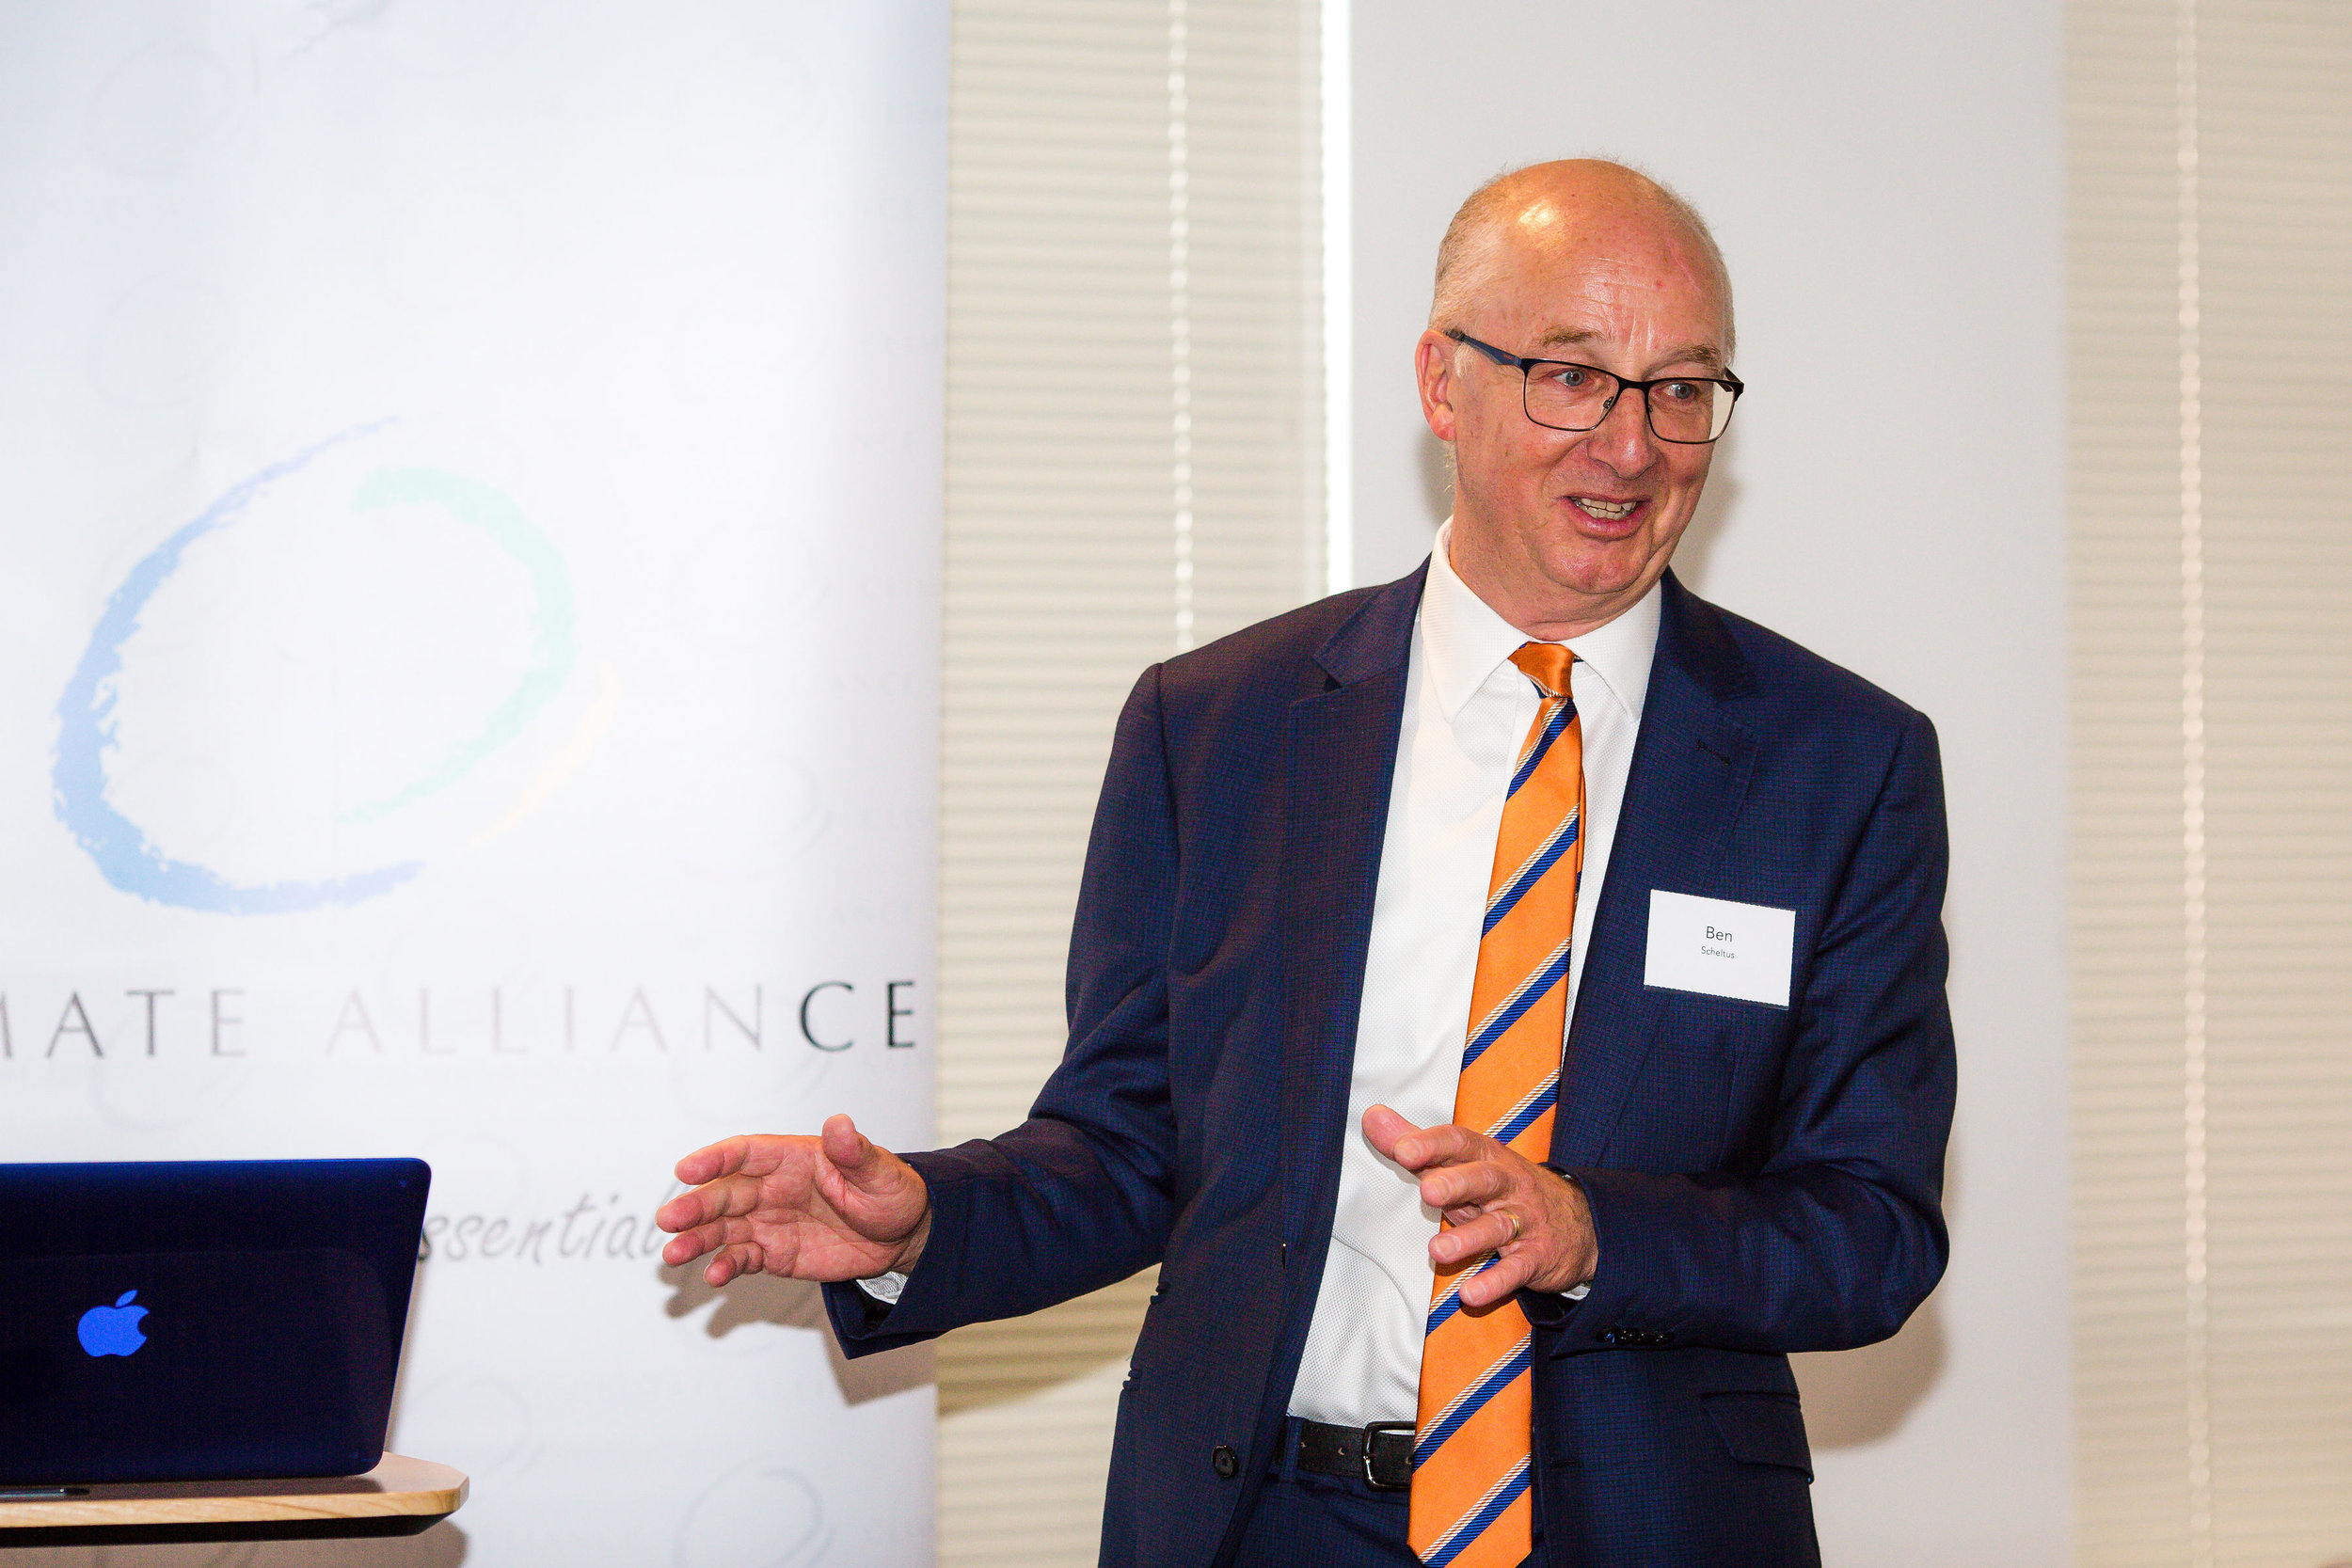  Ben Scheltus, CEO Climate Alliance 